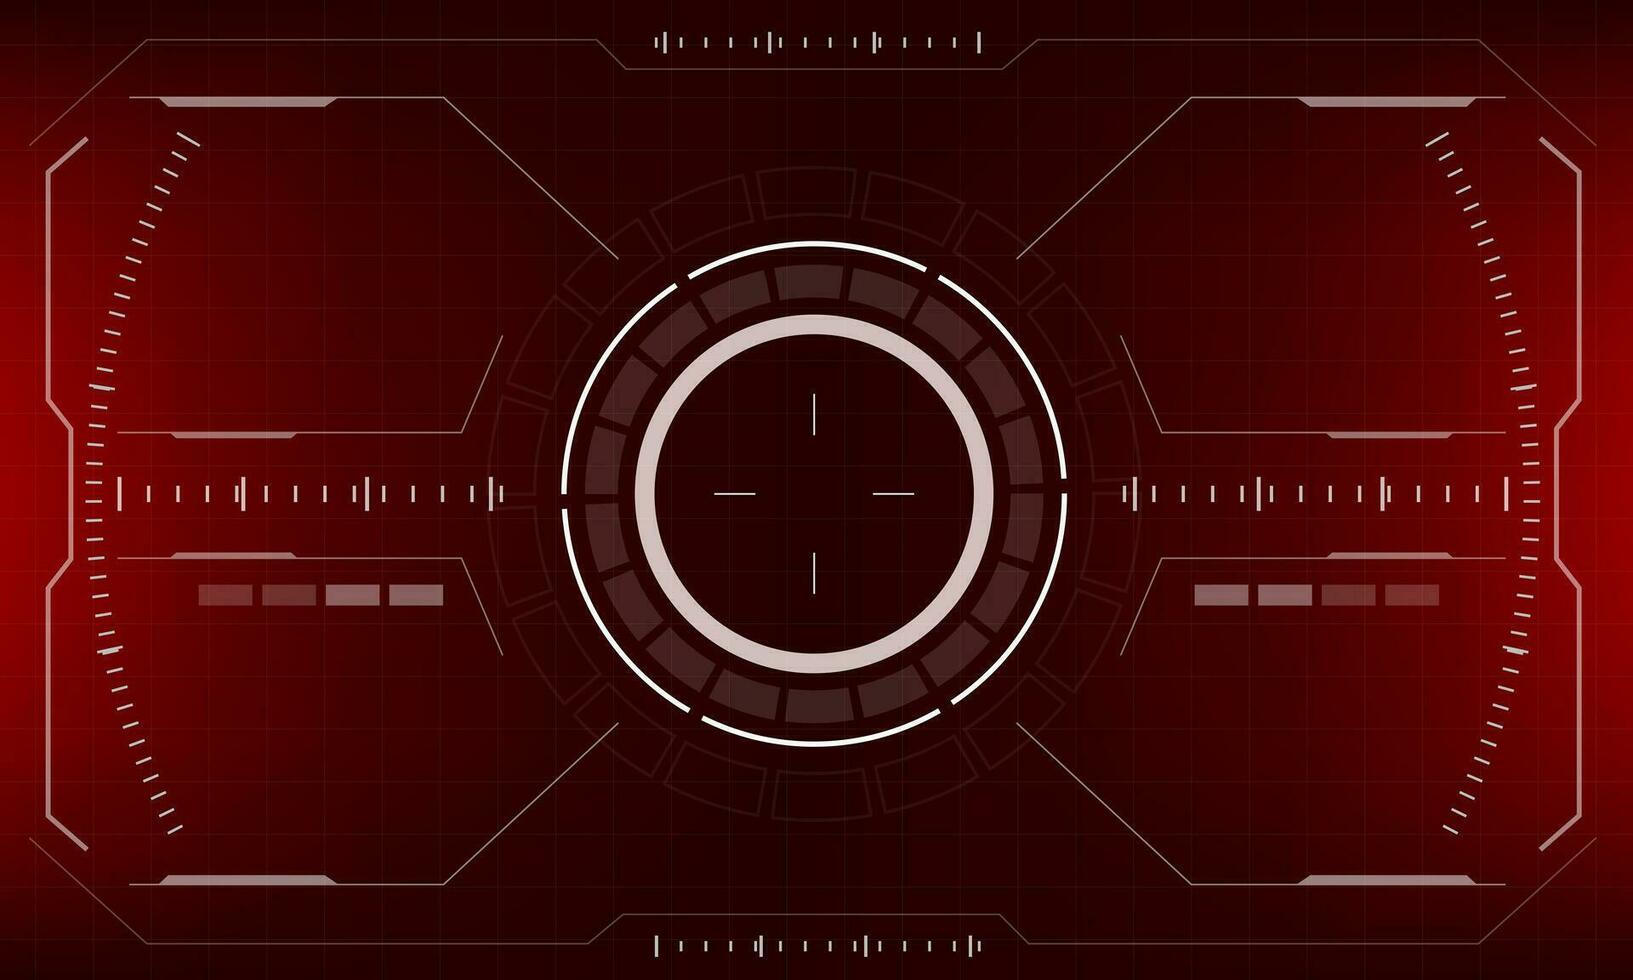 hud ficção científica interface tela vermelho Perigo Visão Projeto virtual realidade futurista tecnologia exibição vetor